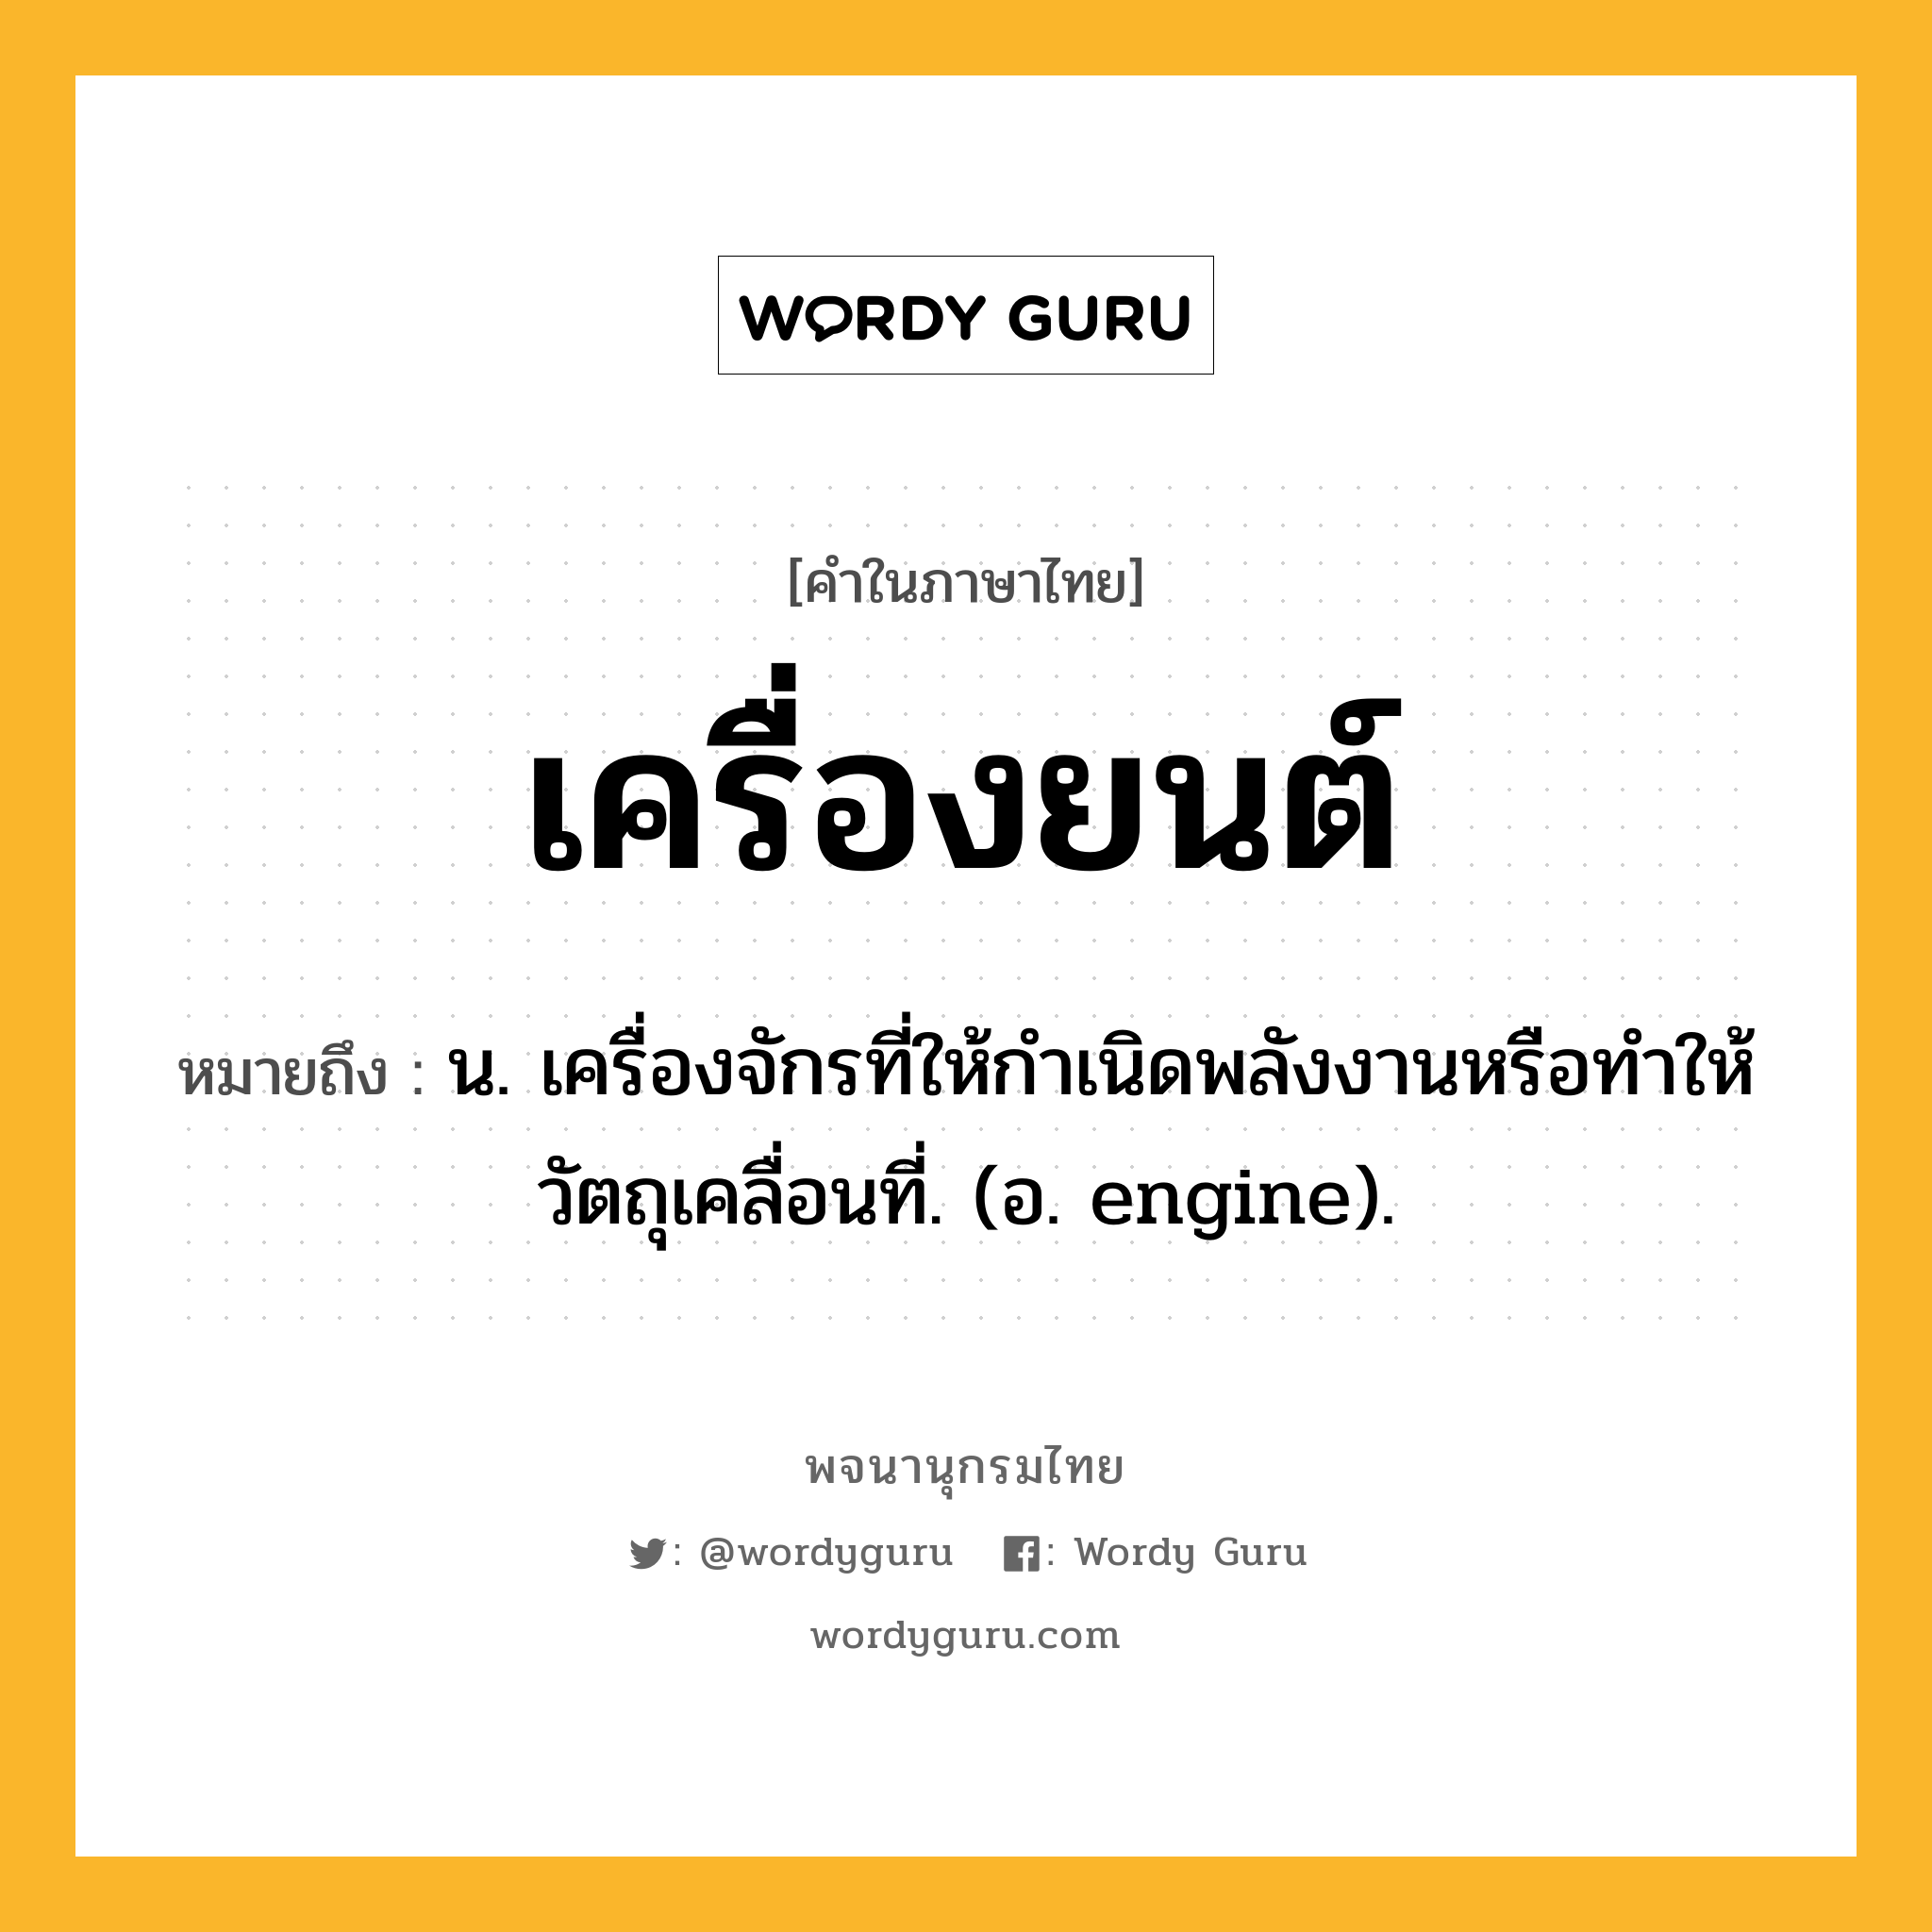 เครื่องยนต์ ความหมาย หมายถึงอะไร?, คำในภาษาไทย เครื่องยนต์ หมายถึง น. เครื่องจักรที่ให้กําเนิดพลังงานหรือทําให้วัตถุเคลื่อนที่. (อ. engine).